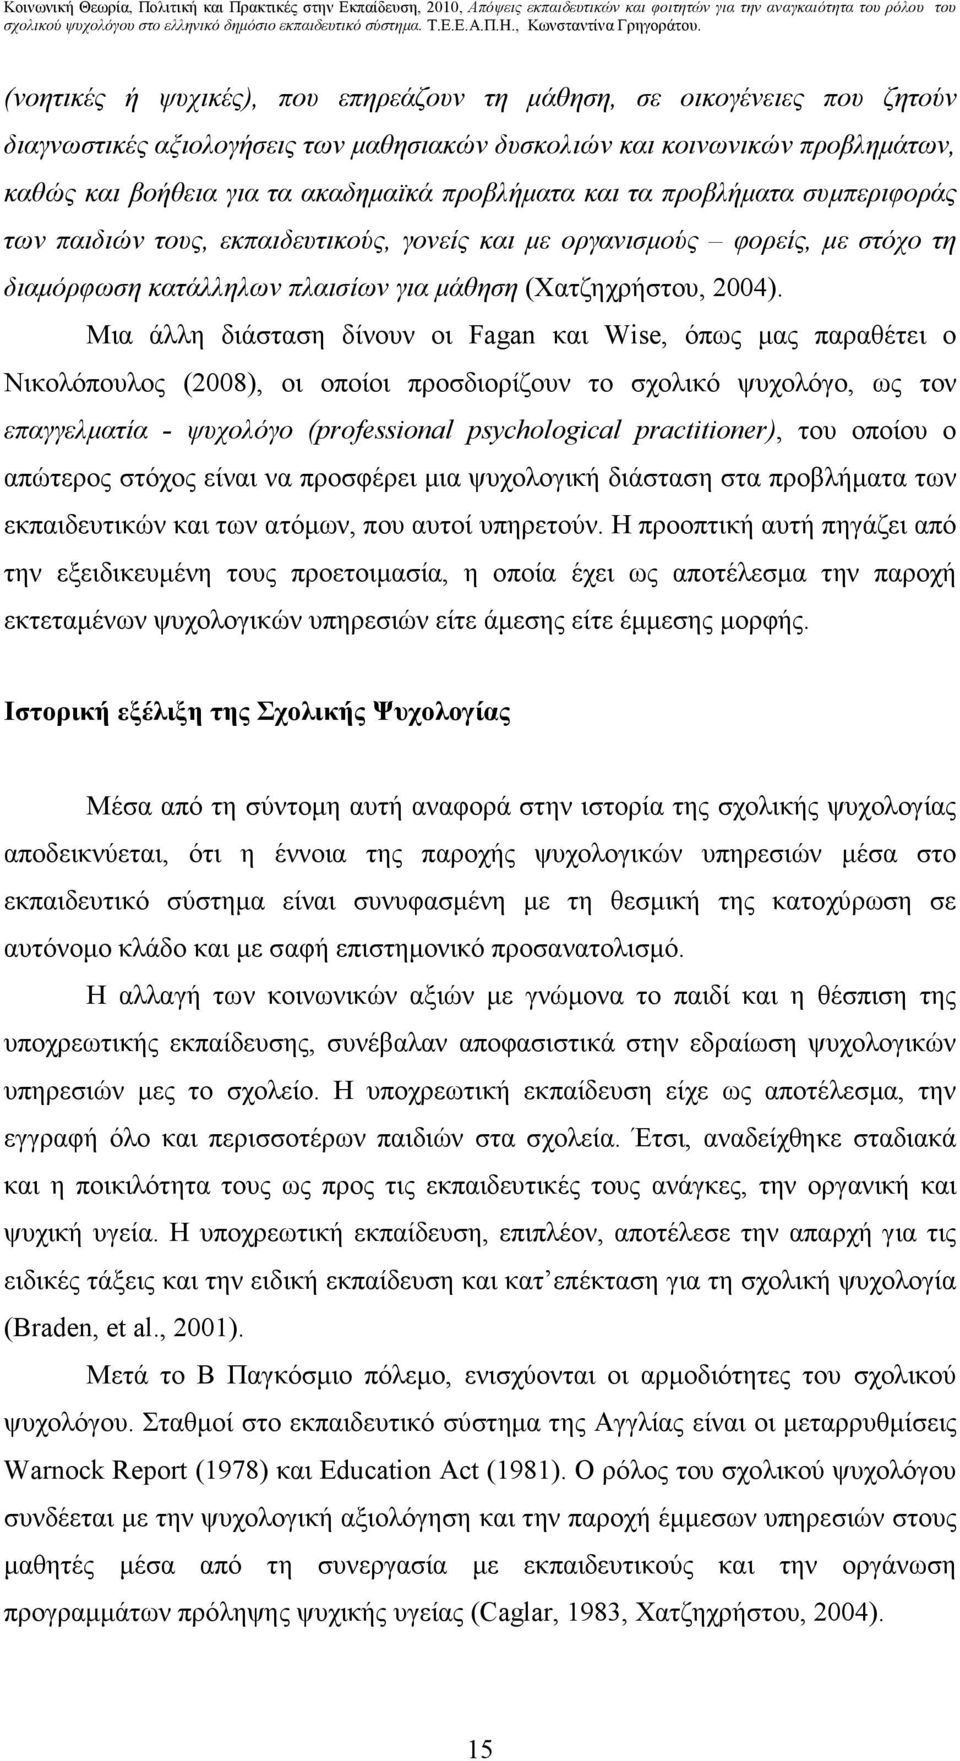 Μια άλλη διάσταση δίνουν οι Fagan και Wise, όπως µας παραθέτει ο Νικολόπουλος (2008), οι οποίοι προσδιορίζουν το σχολικό ψυχολόγο, ως τον επαγγελµατία - ψυχολόγο (professional psychological